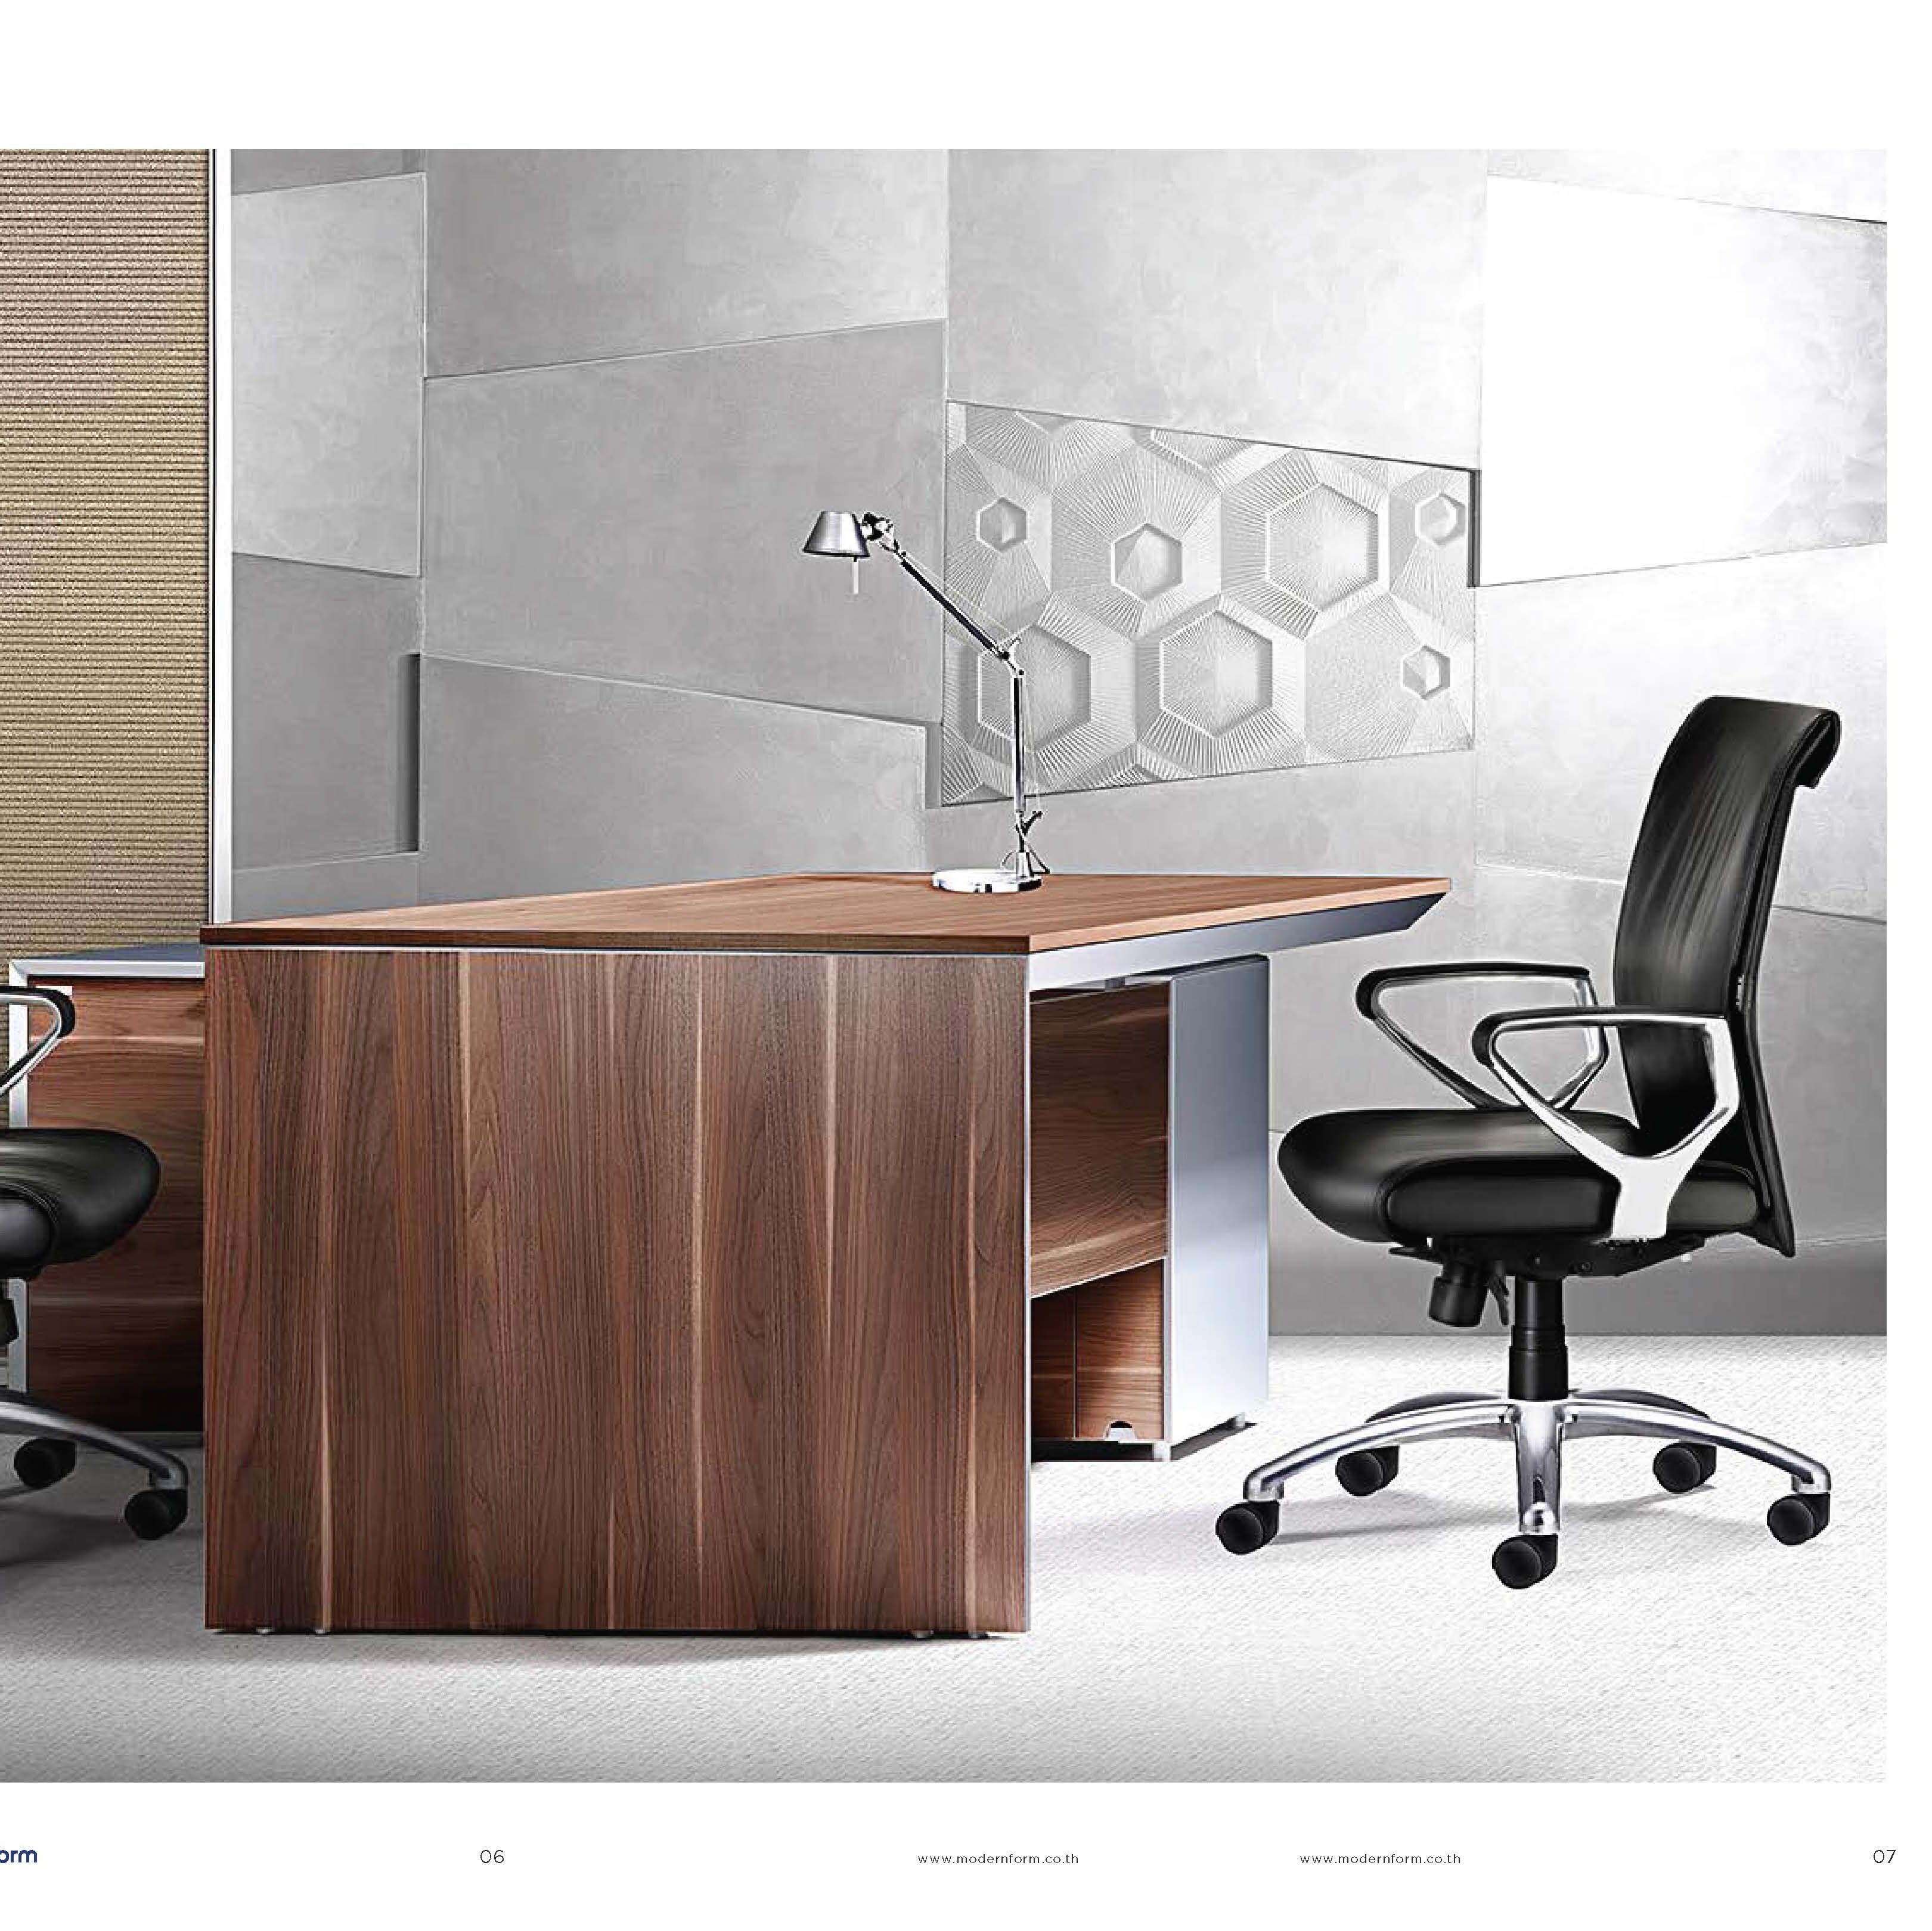 โต๊ะผู้บริหาร#โต๊ะเจ้านาย#โต๊ะทำงานหัวหน้างาน#โต๊ะเจ้าหน้าที่#โต๊ะคอมพิวเตอร์